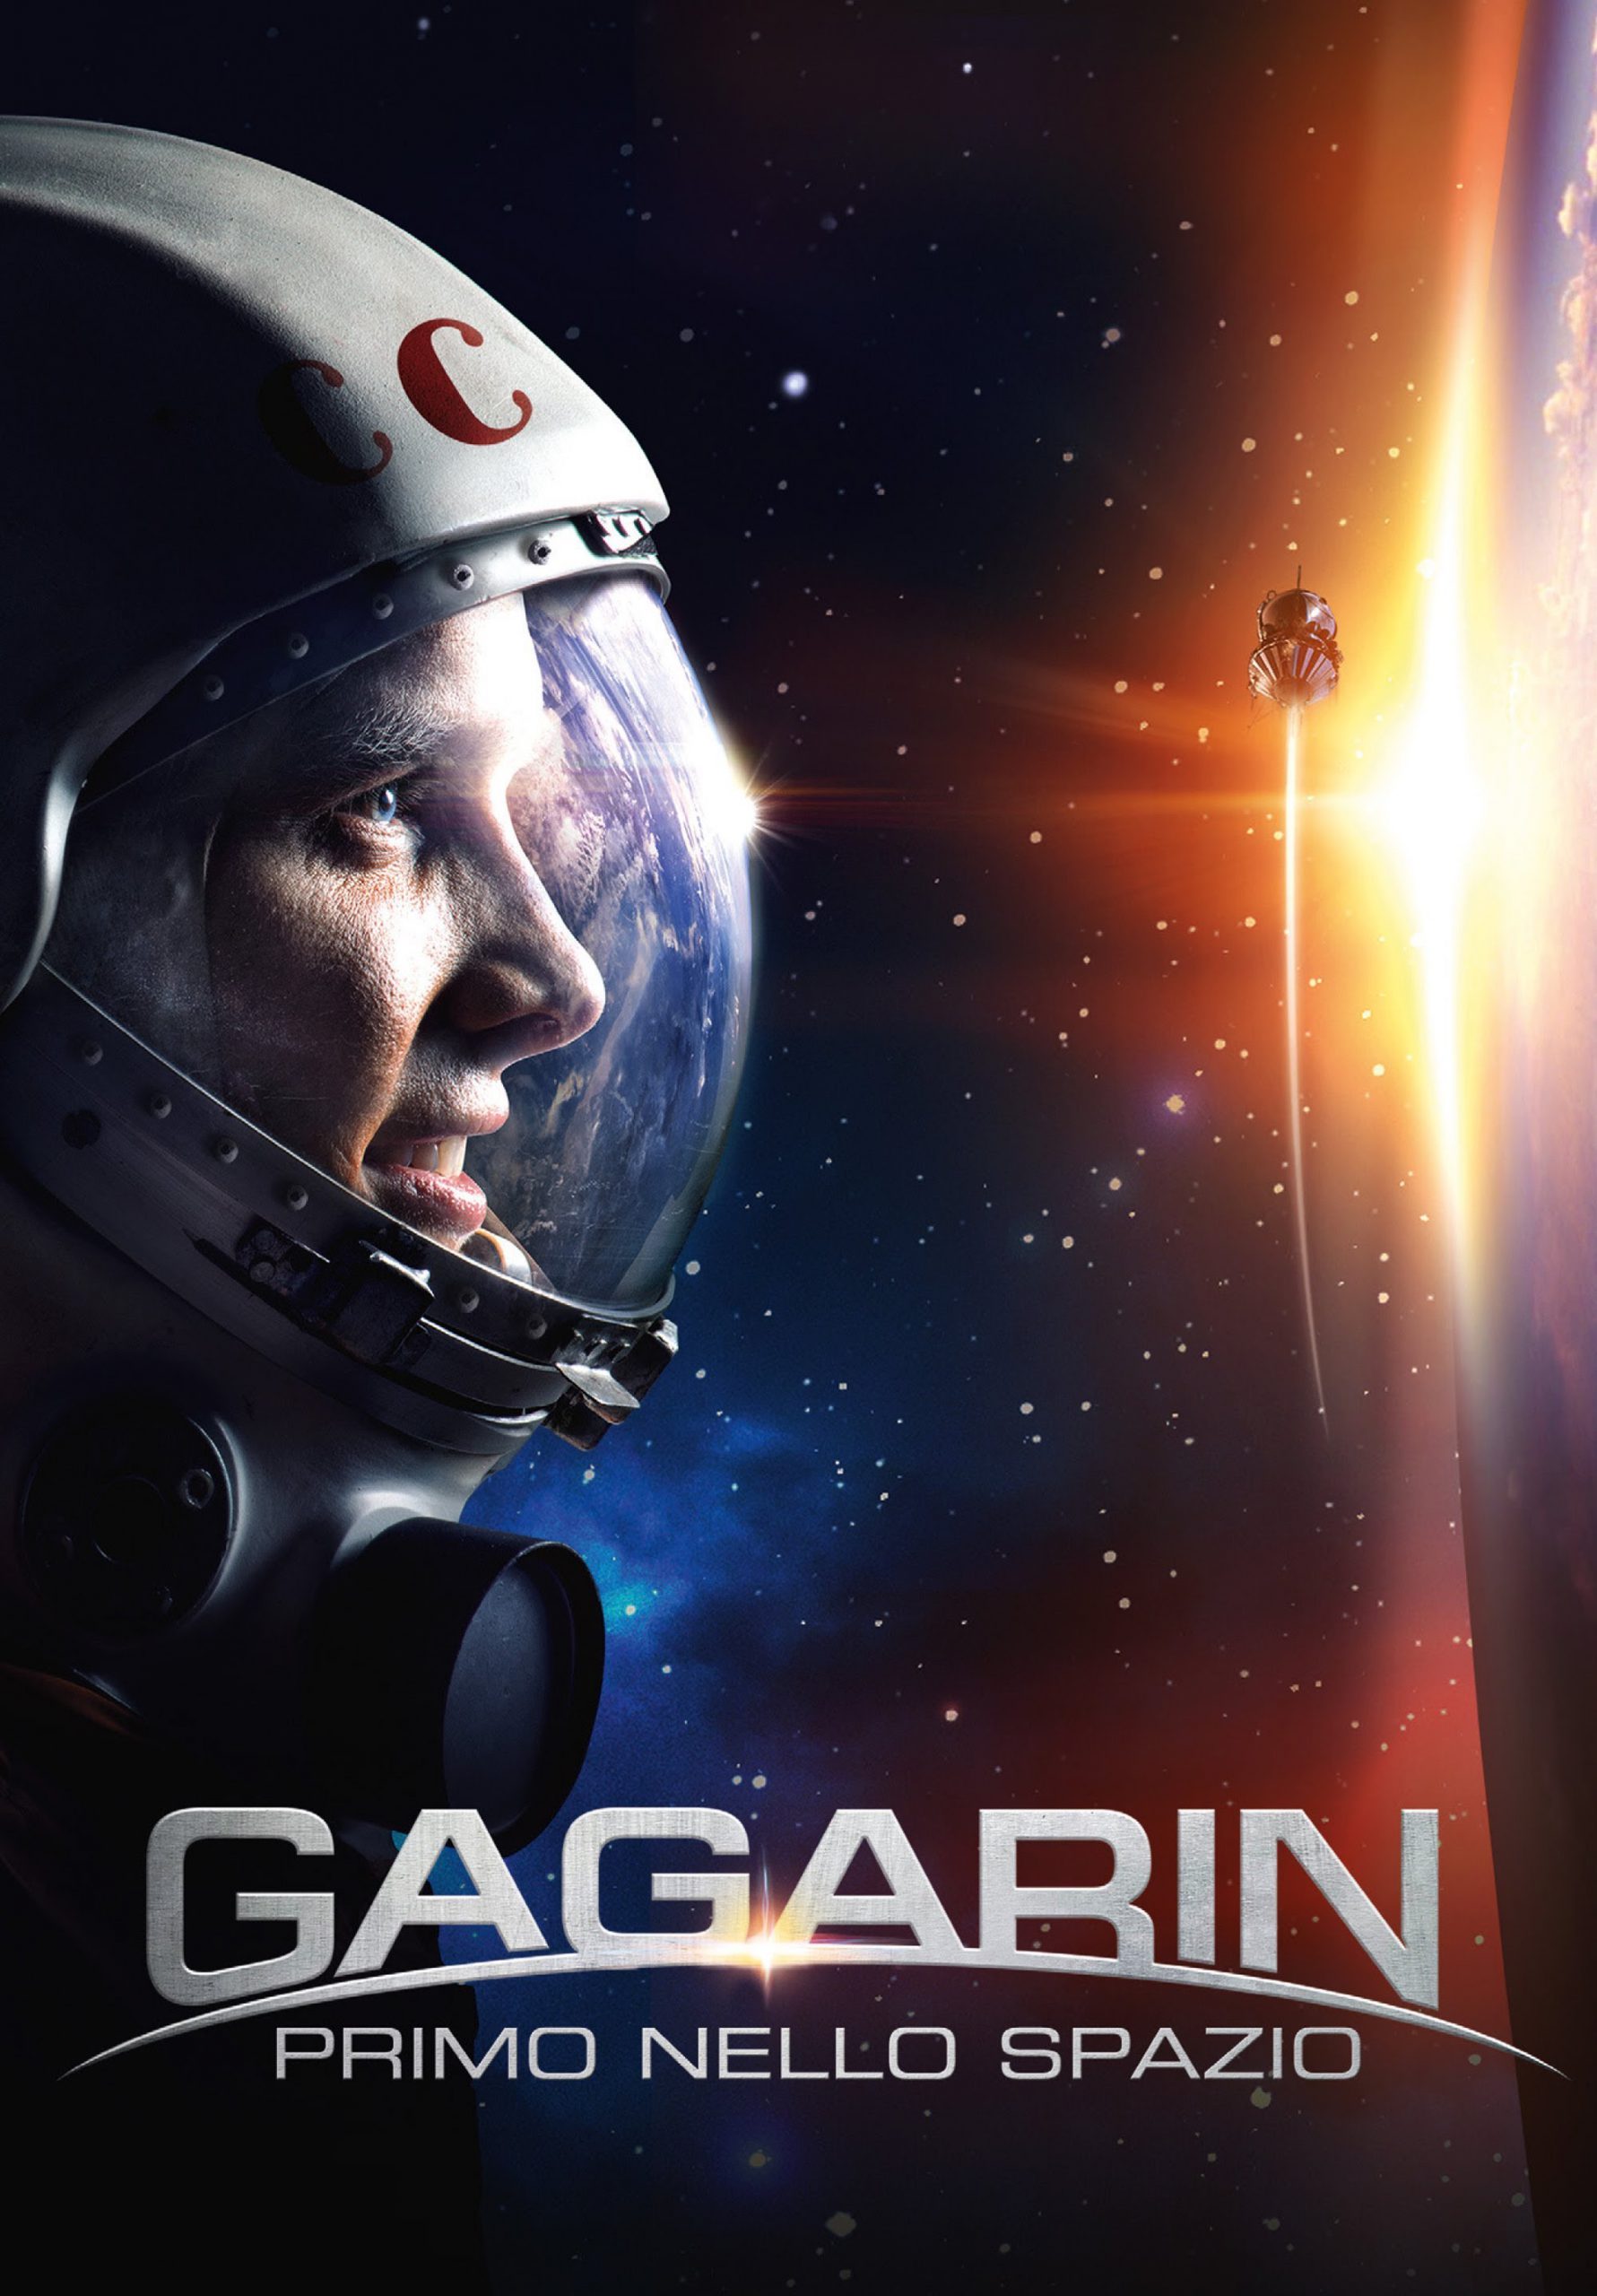 Gagarin: Primo nello spazio [HD] (2013)